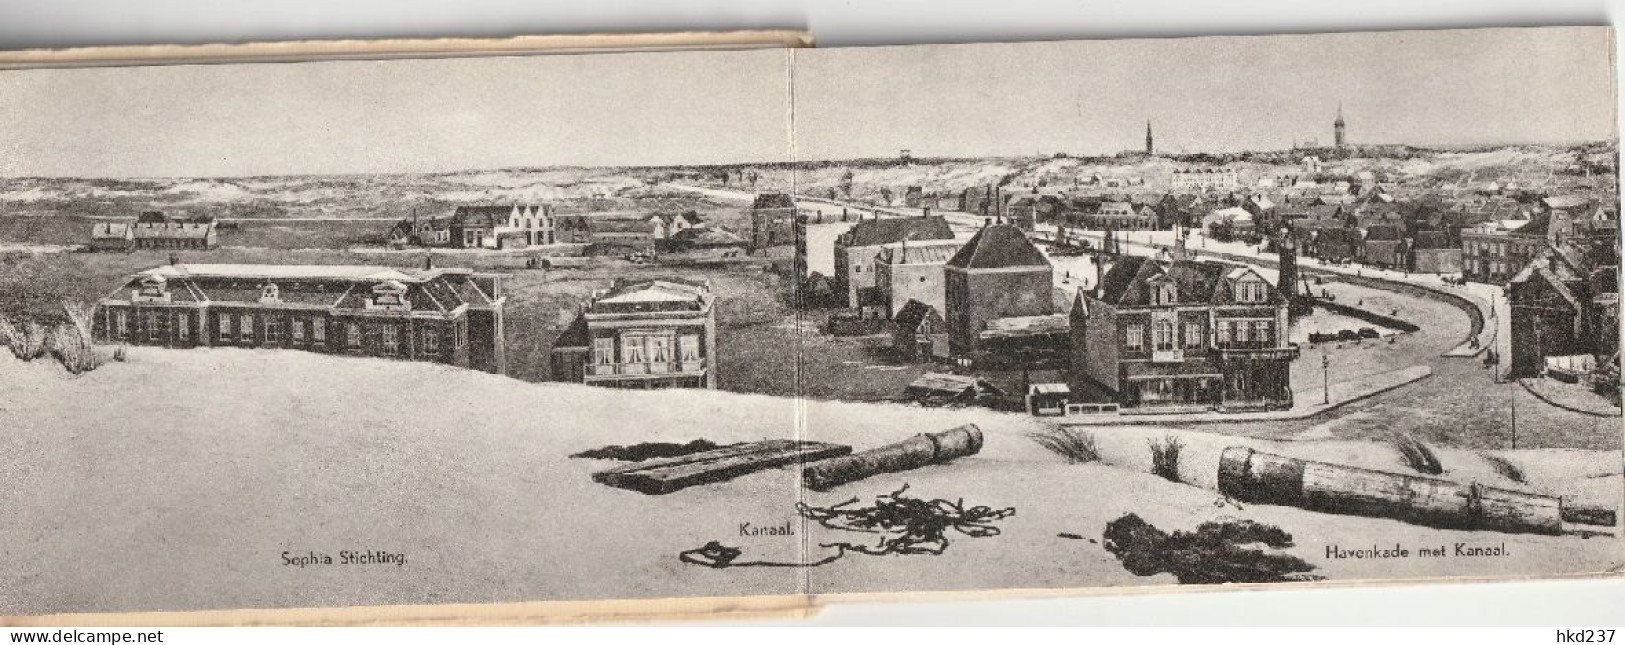 Panorama Mesdag Scheveningen in 1881 boekje 12 kaarten carnet booklet       3370